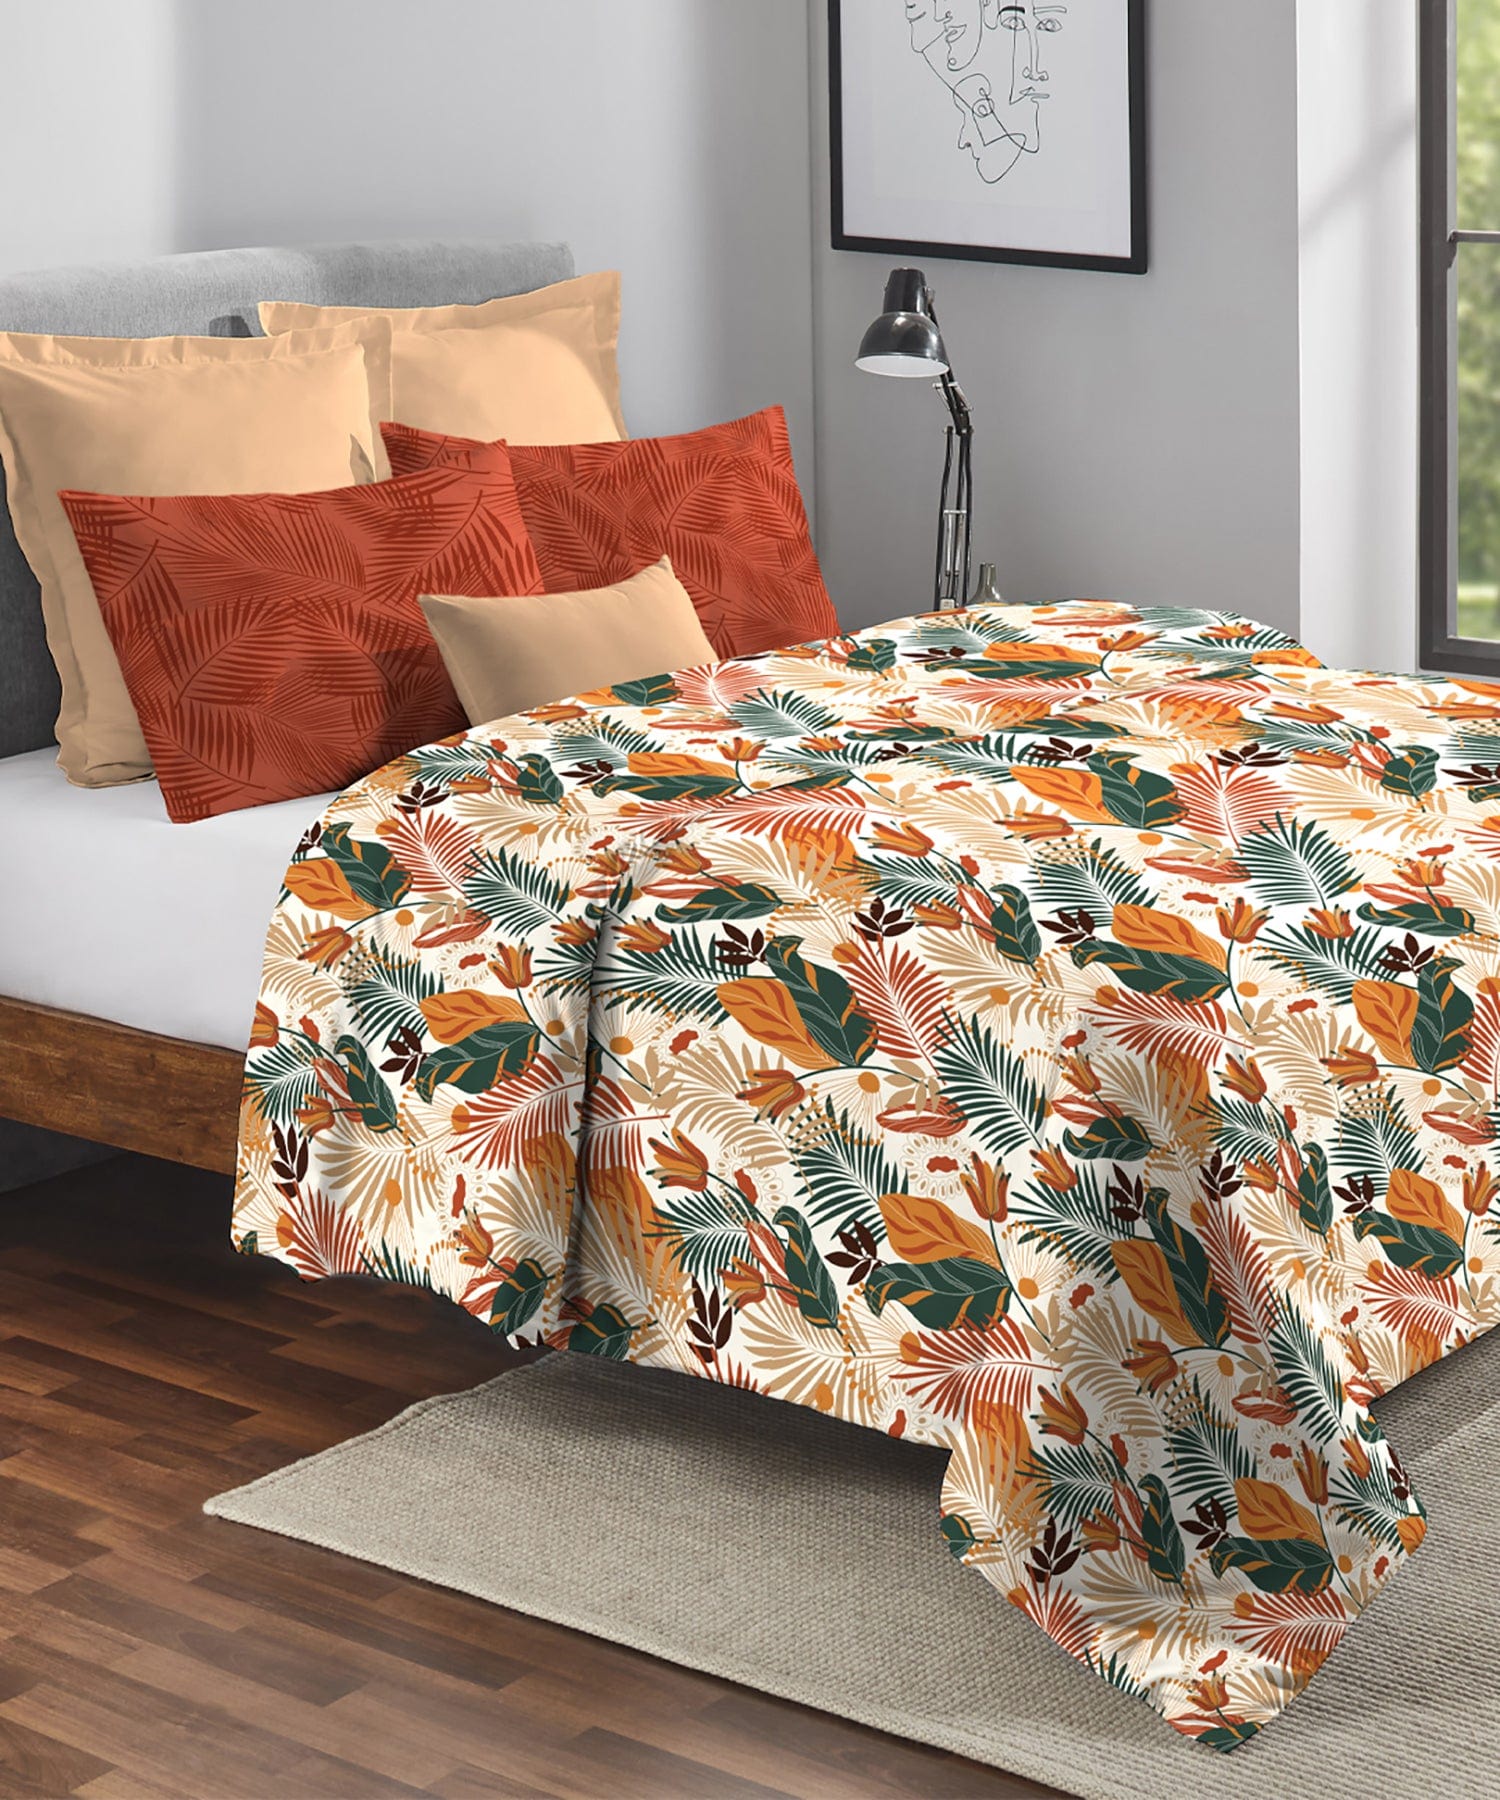 Queen Comforter ₹2999/-